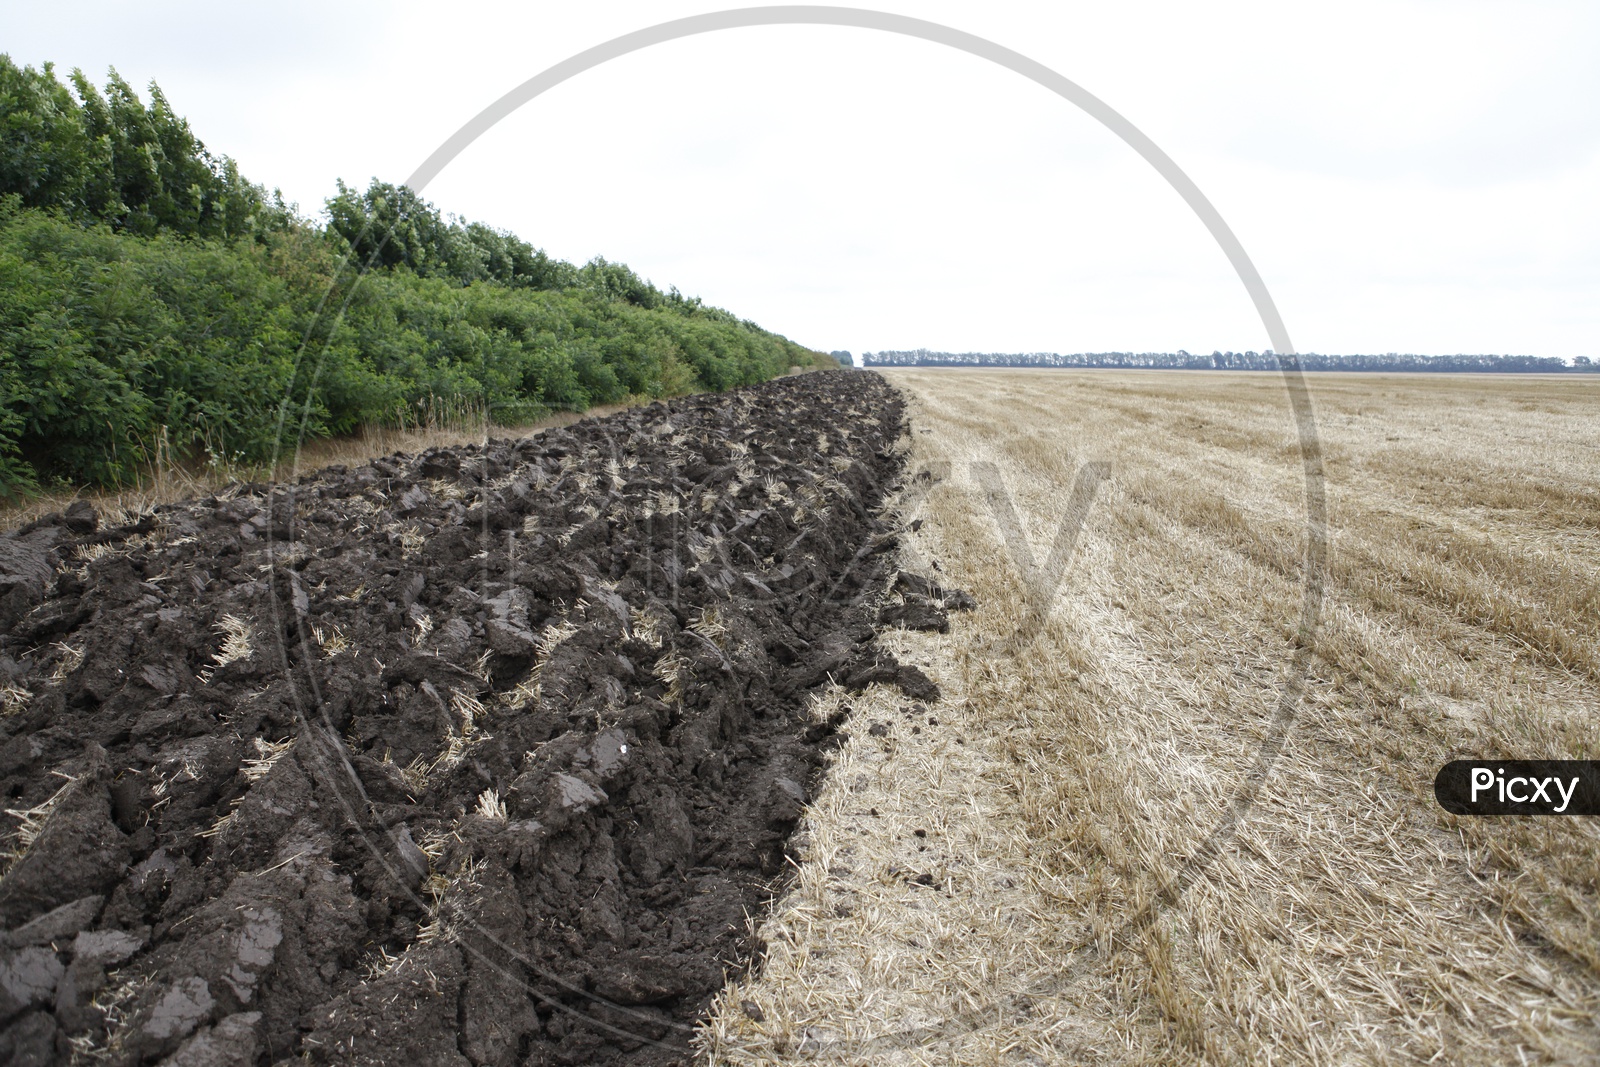 Dried up fields alongside the mud blocks